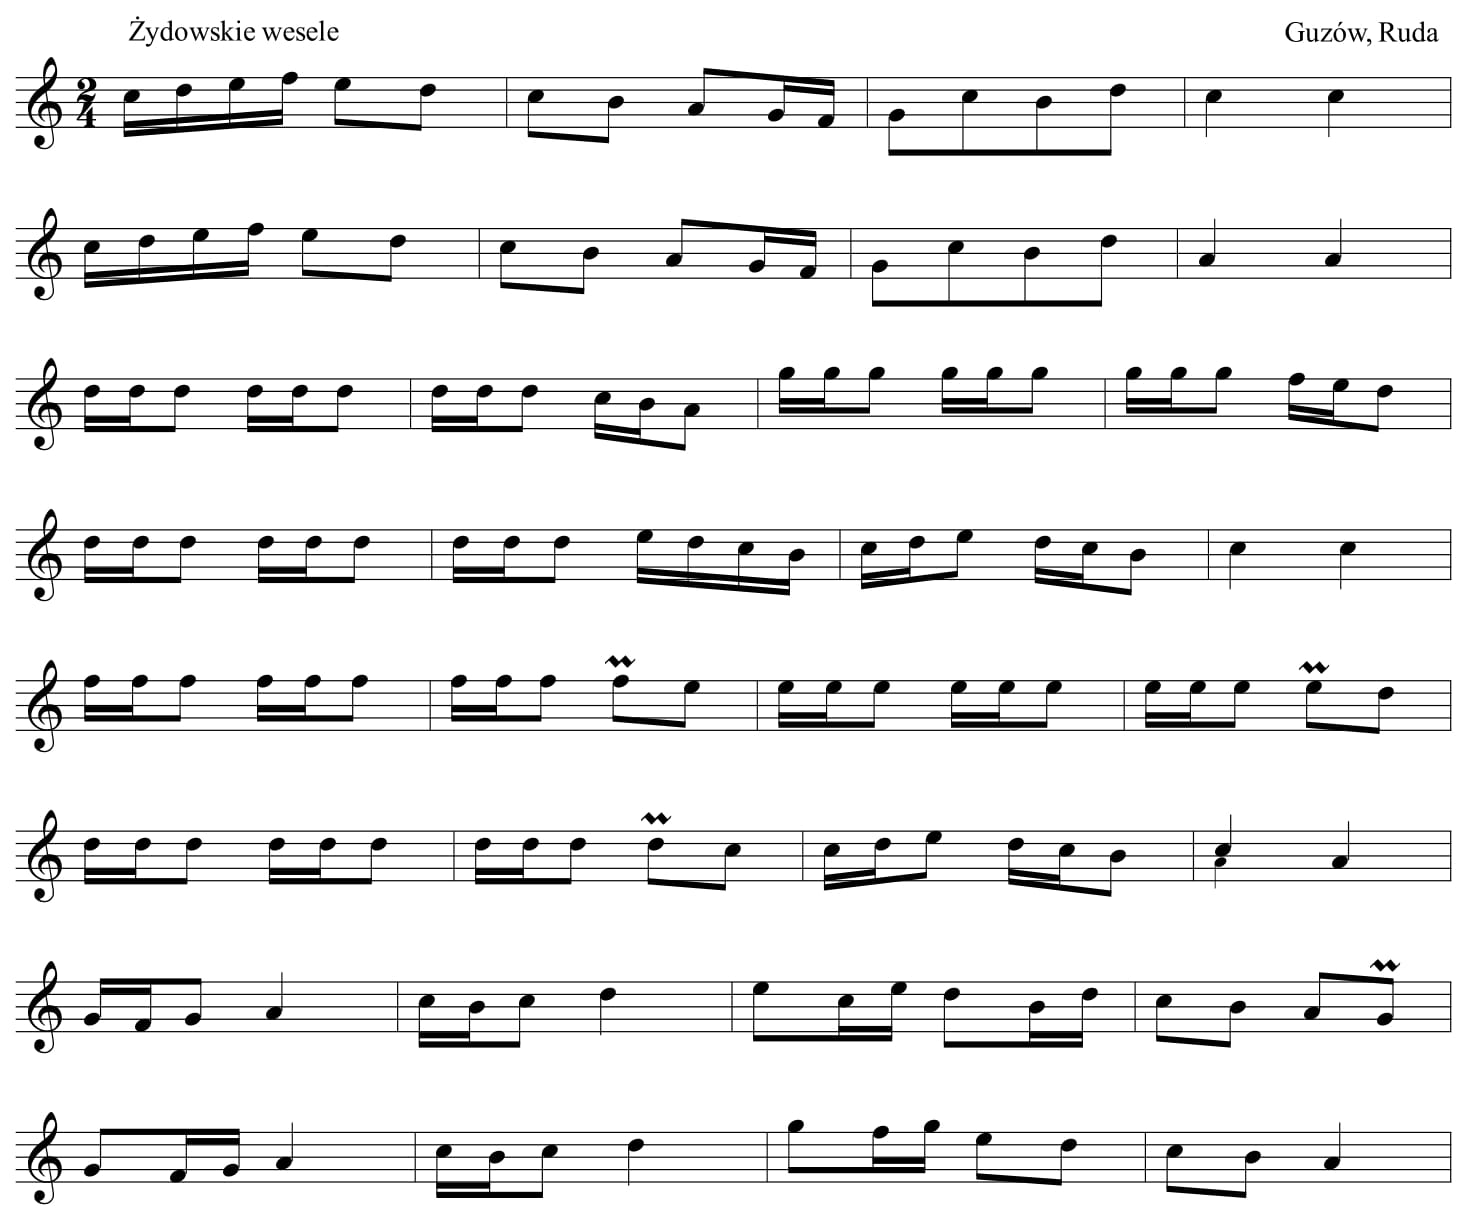 Przykład 4. Repertuar instrumentalny z wesela żydowskiego w Rudzie Guzowskiej z VI części tomu <i>Mazowsze</i> Oskara Kolberga 